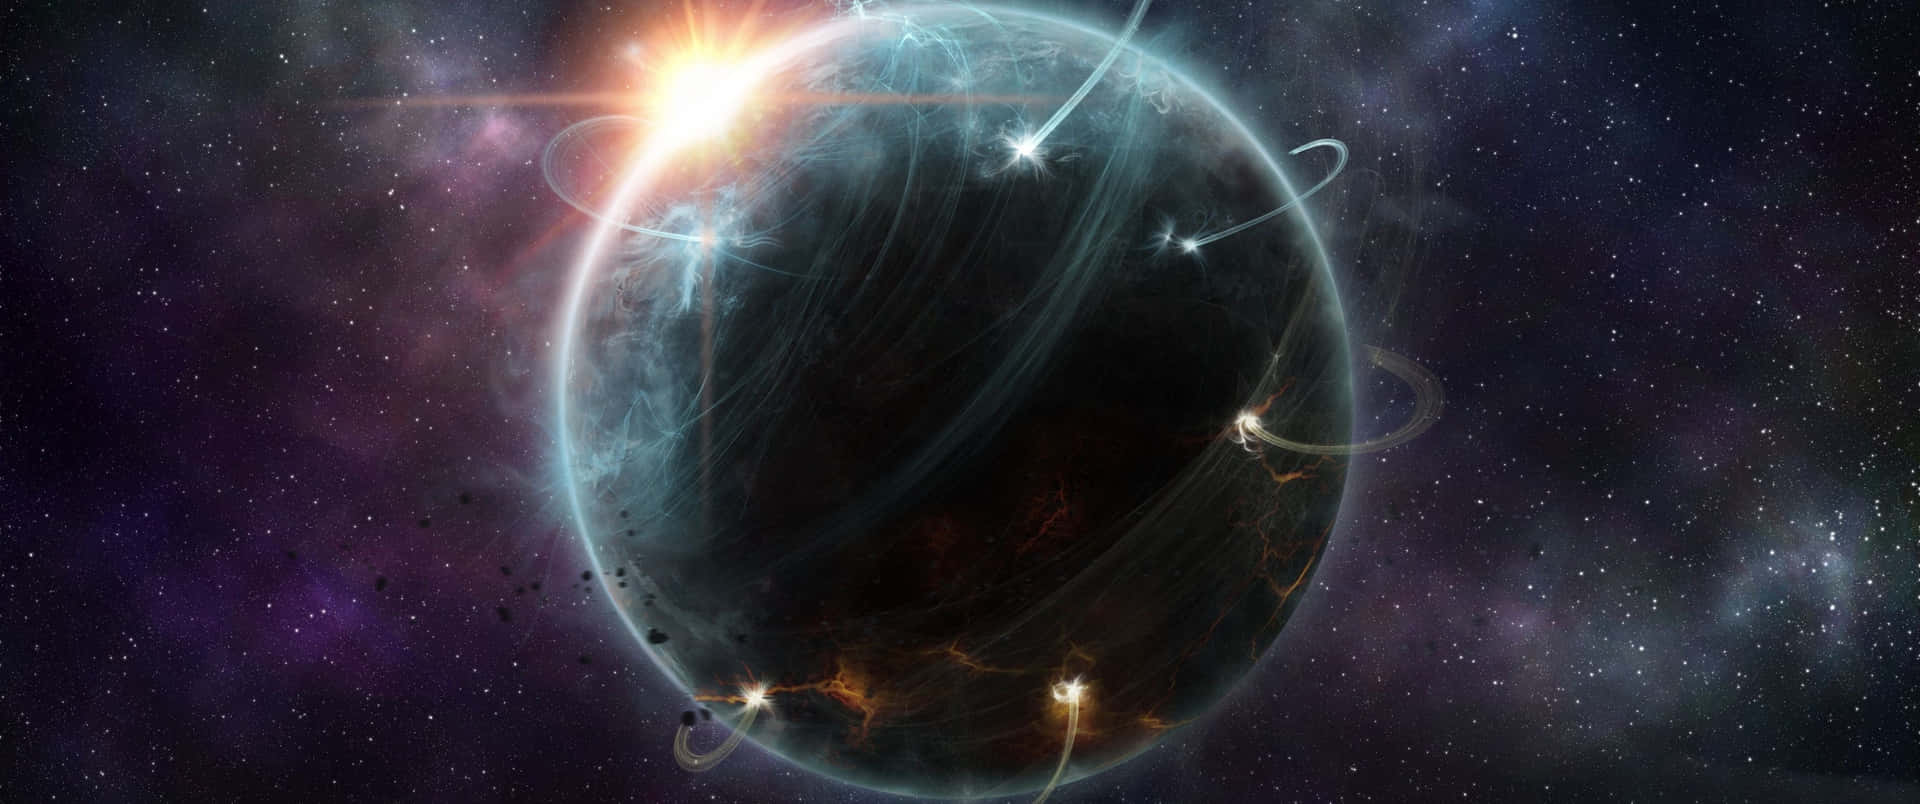 4k Universe Planet Of Kehn`wa Background